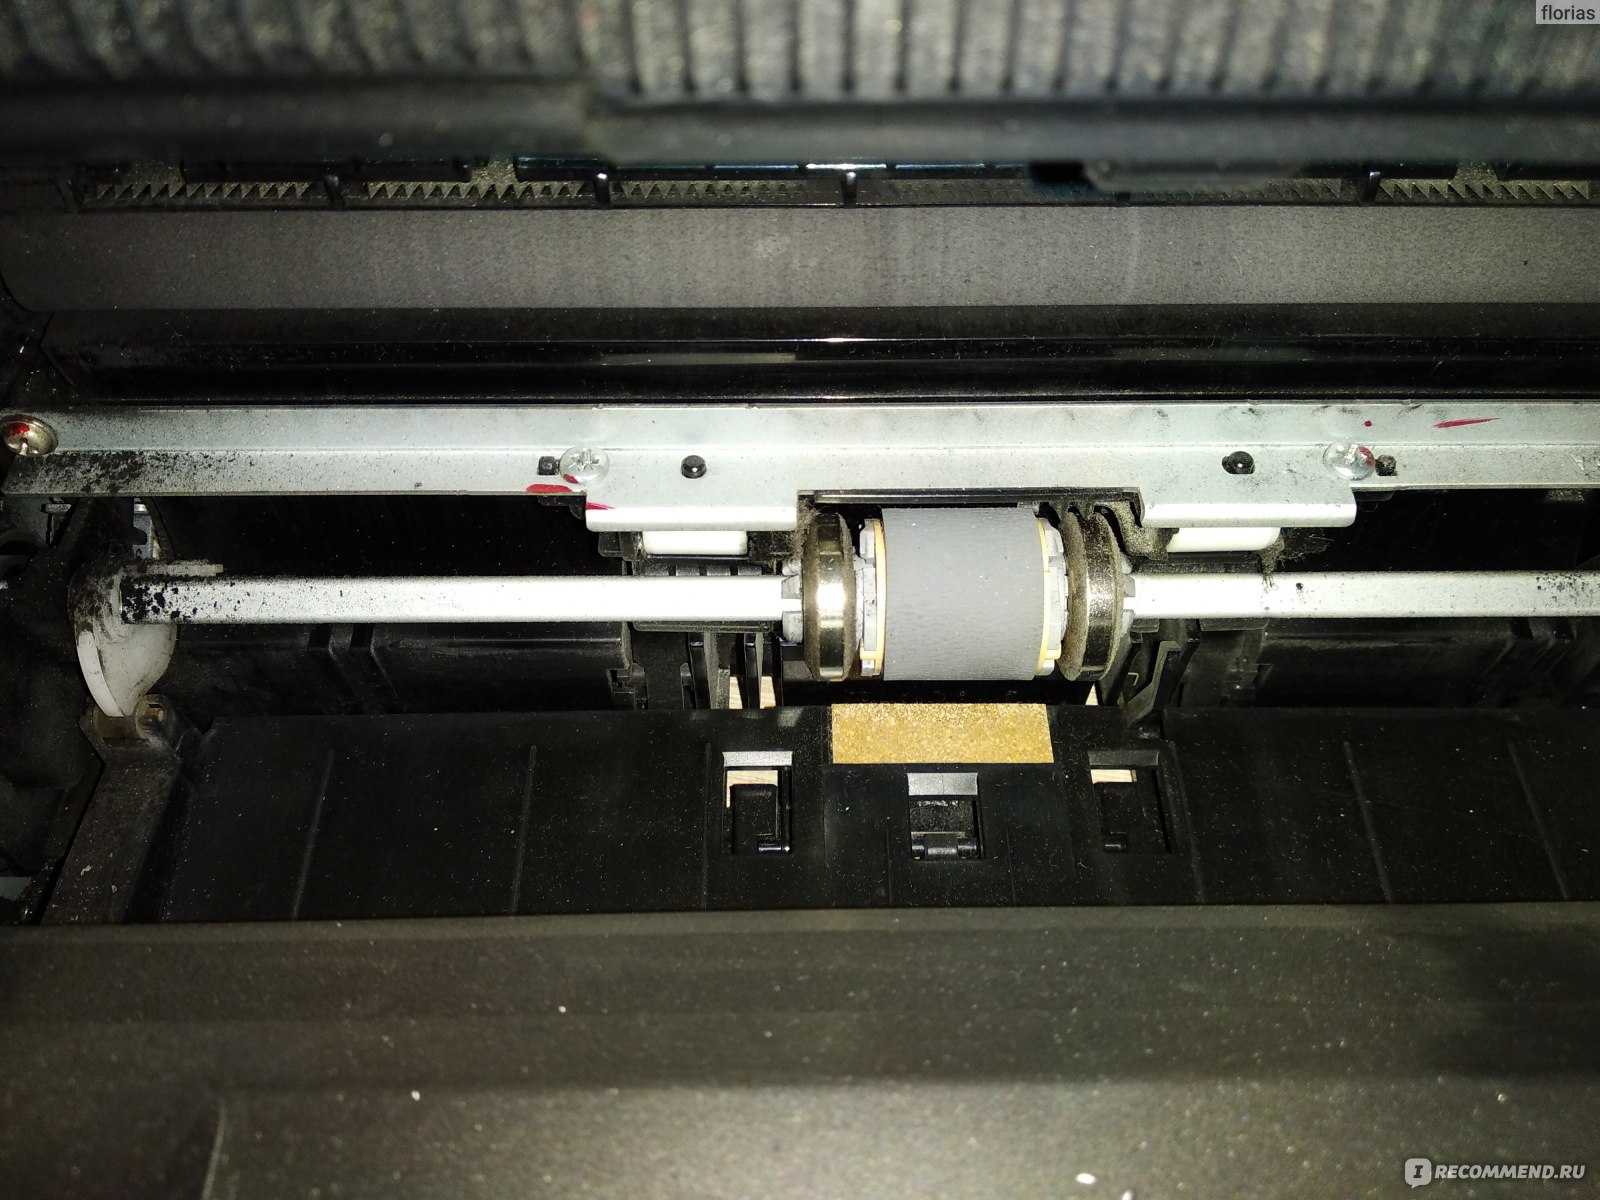 Принтер не захватывает бумагу, что делать, возможные причины?